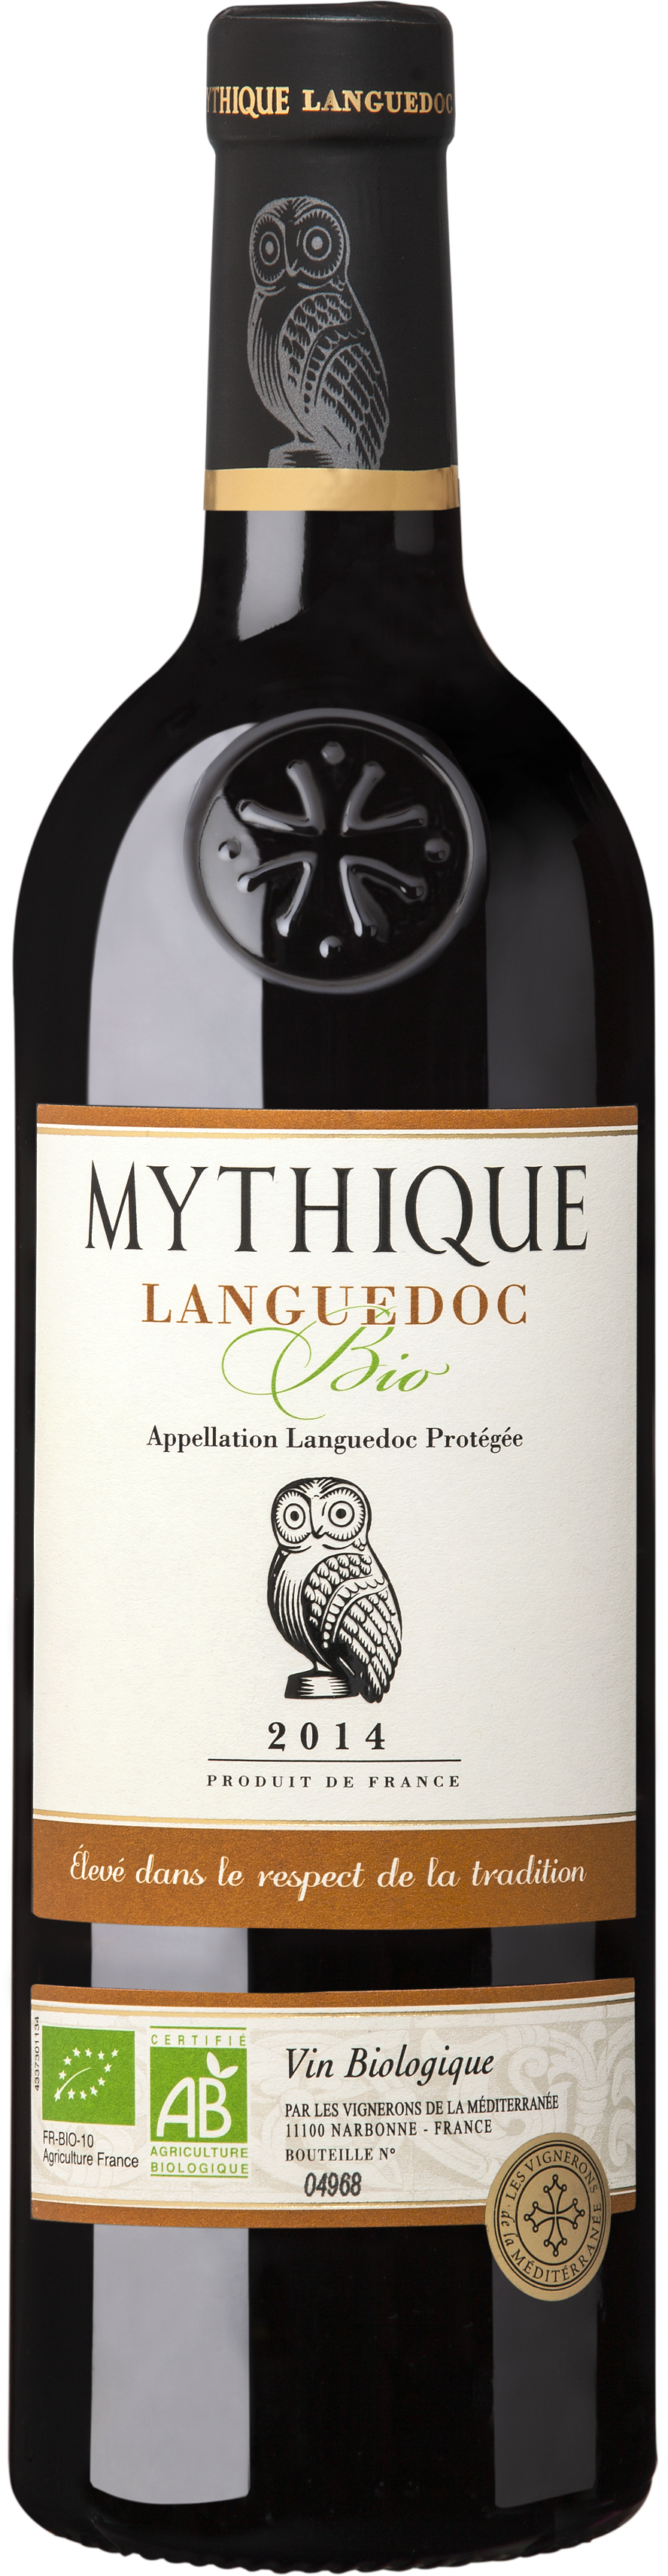 神秘客守望幹紅葡萄酒 Mythique Languedoc Bio Rouge